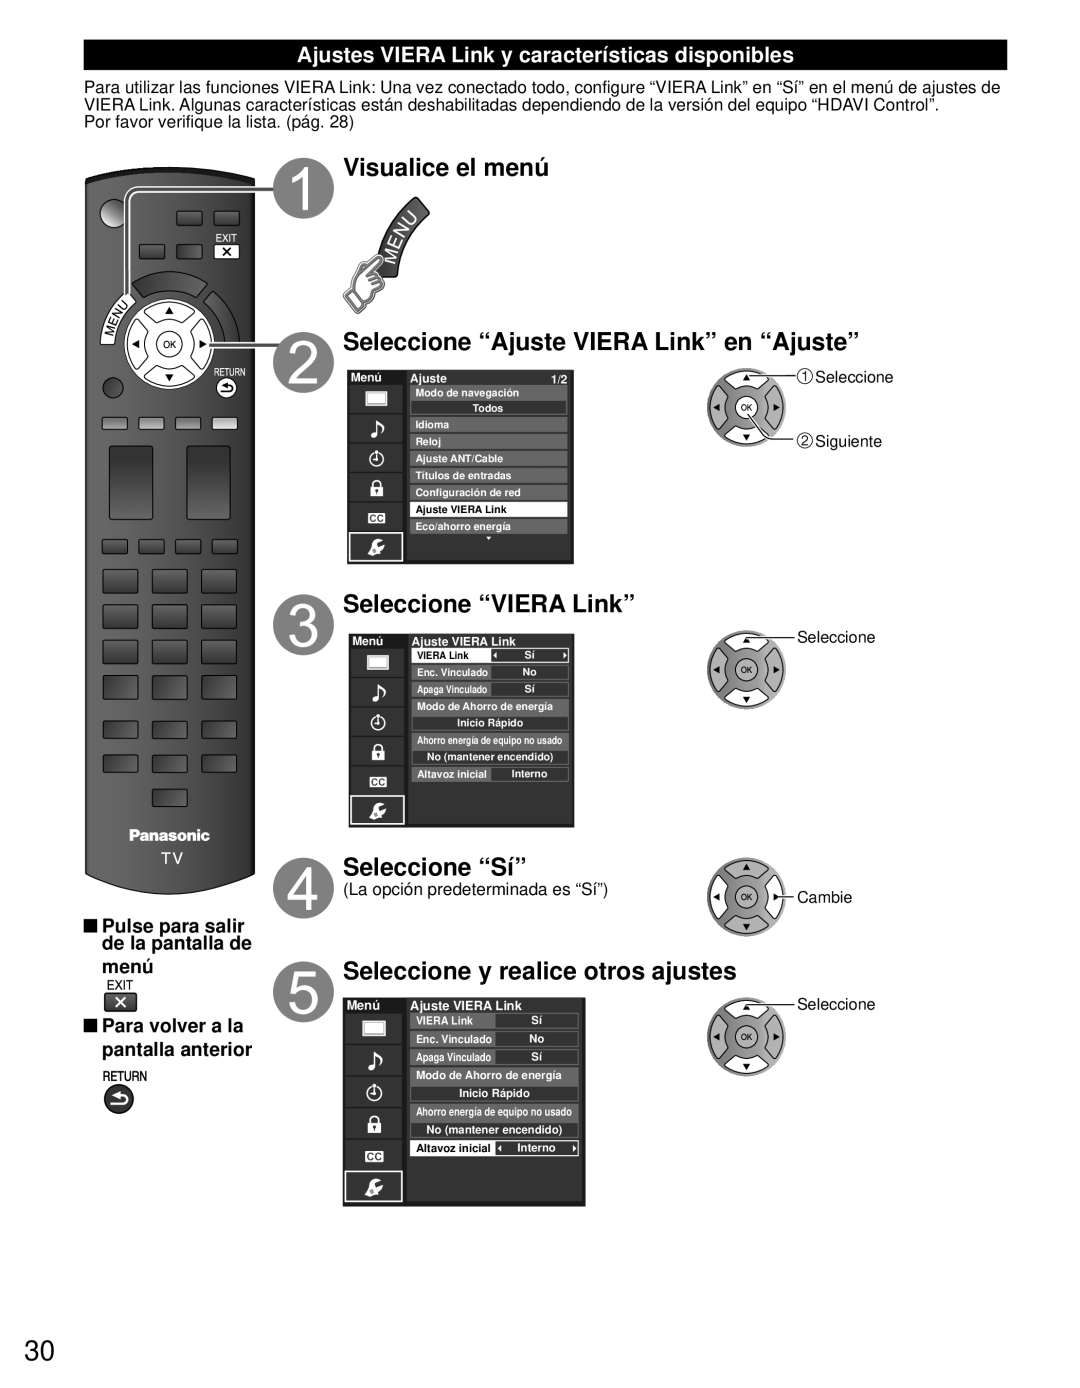 Panasonic TC-L42E3 Visualice el menú Seleccione “Ajuste VIERA Link” en “Ajuste”, Seleccione “VIERA Link”, Seleccione “Sí” 